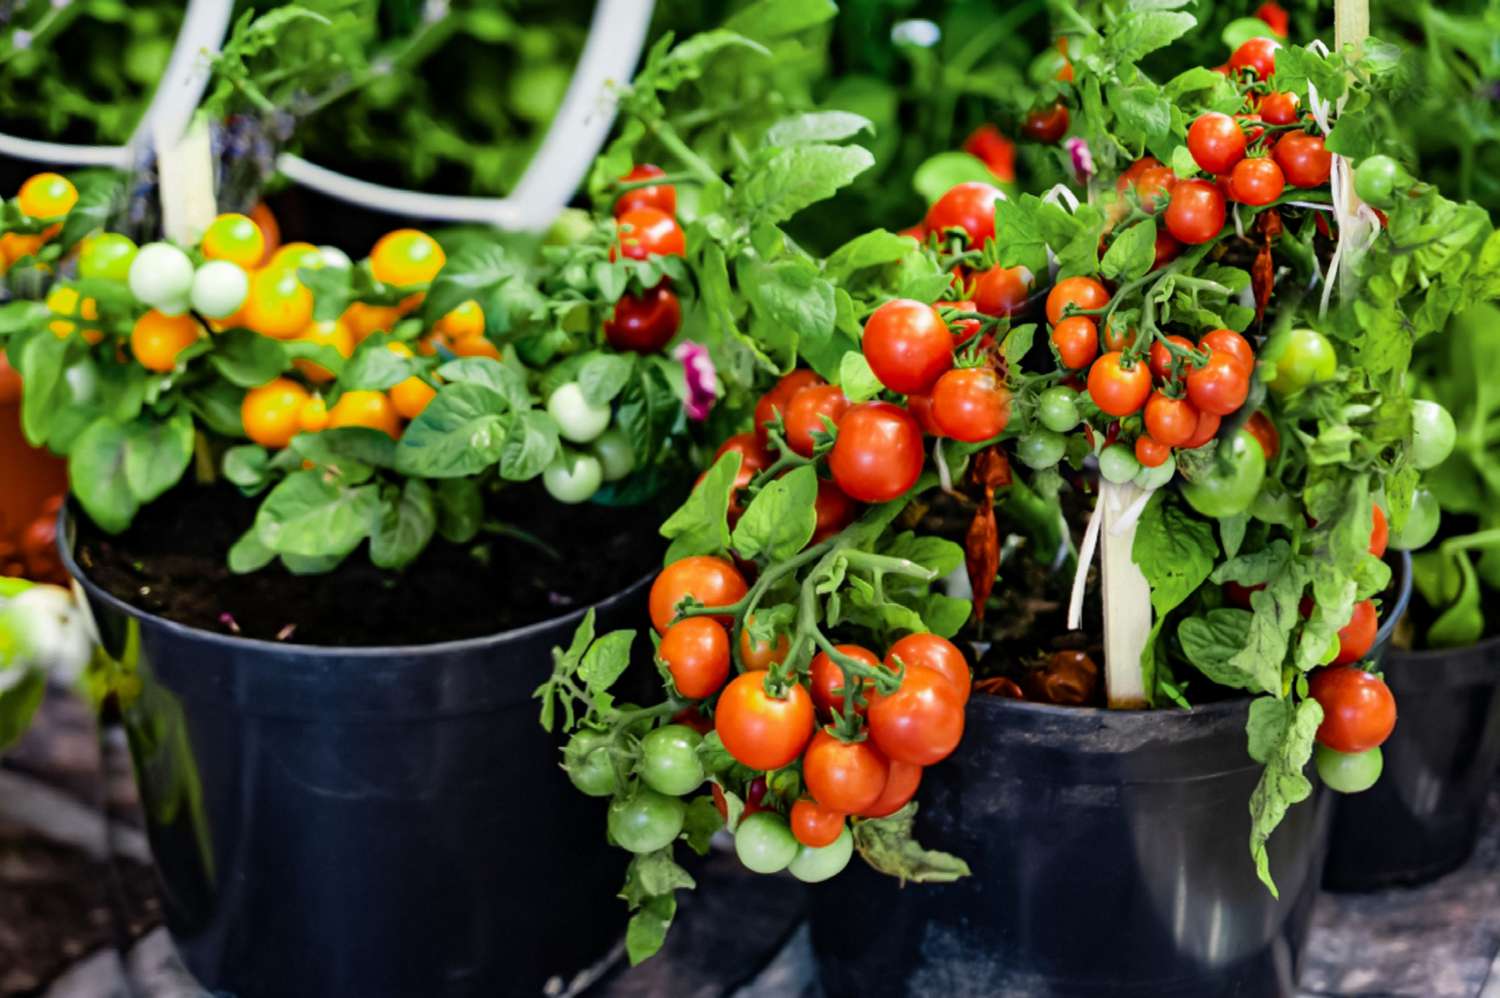 Plantas de tomate em recipientes pretos com tomates vermelhos, laranja e verdes pendurados